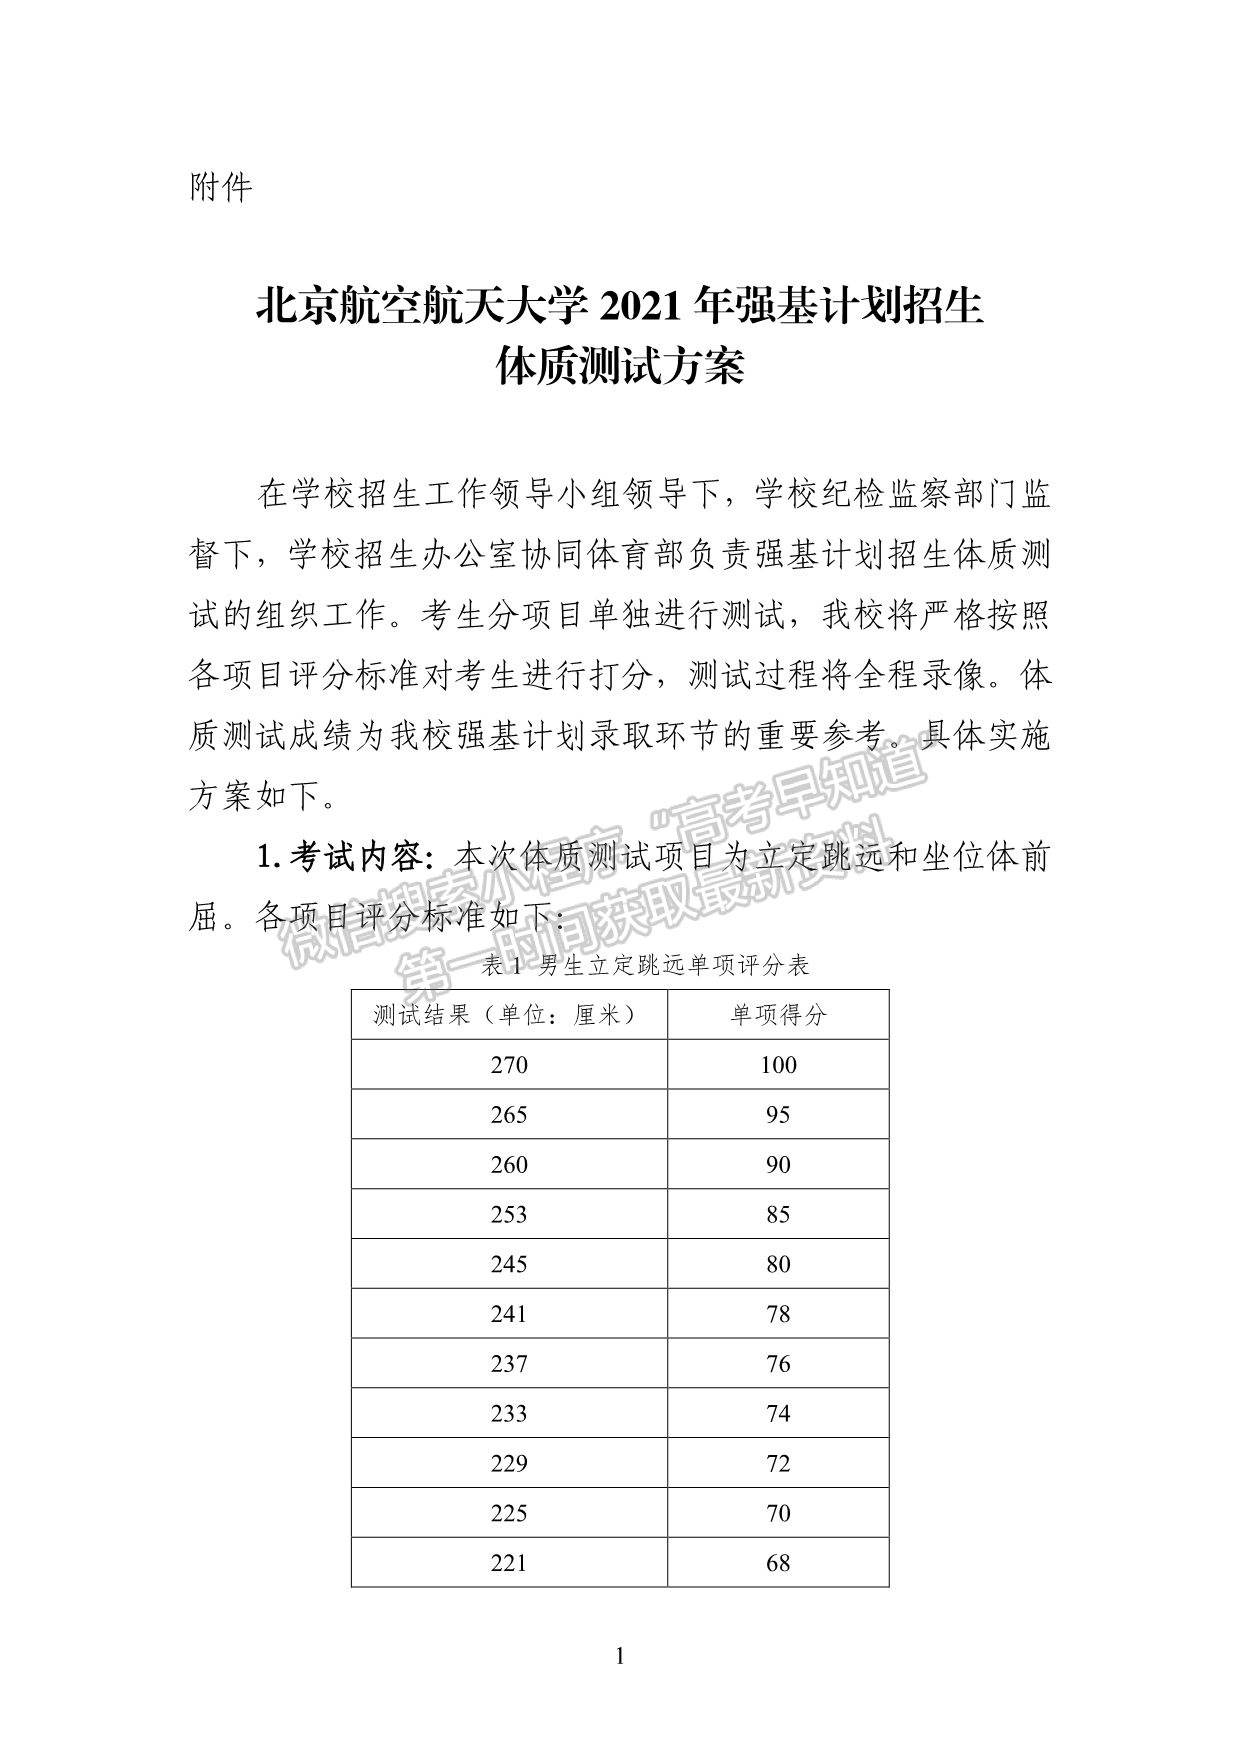 北京航空航天大学2021年强基计划招生简章